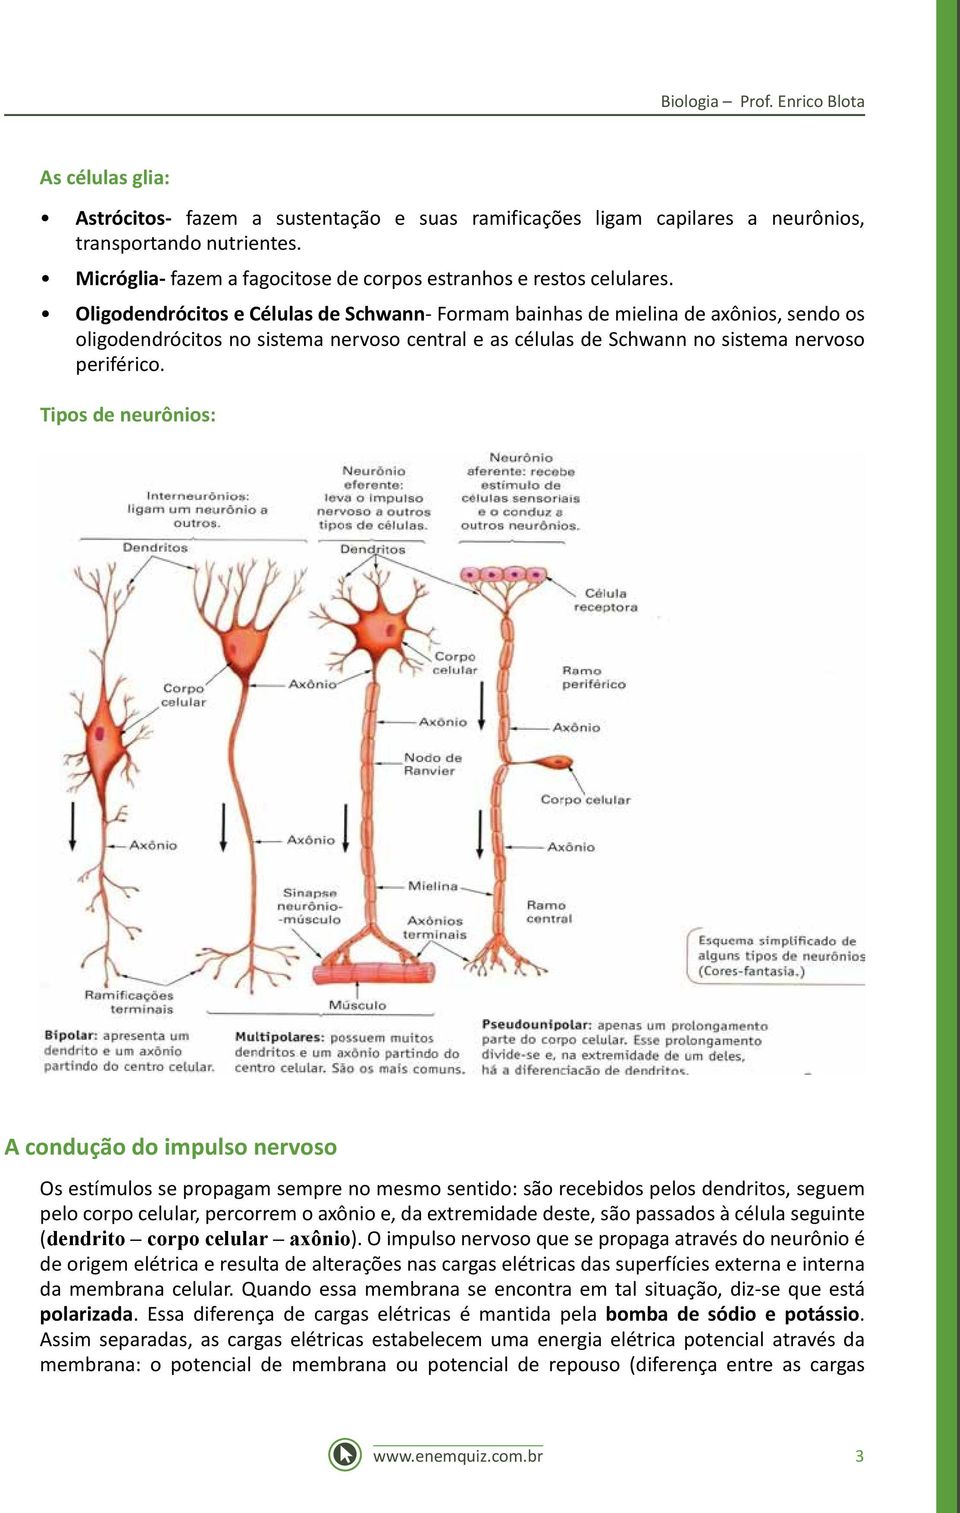 Oligodendrócitos e Células de Schwann- Formam bainhas de mielina de axônios, sendo os oligodendrócitos no sistema nervoso central e as células de Schwann no sistema nervoso periférico.